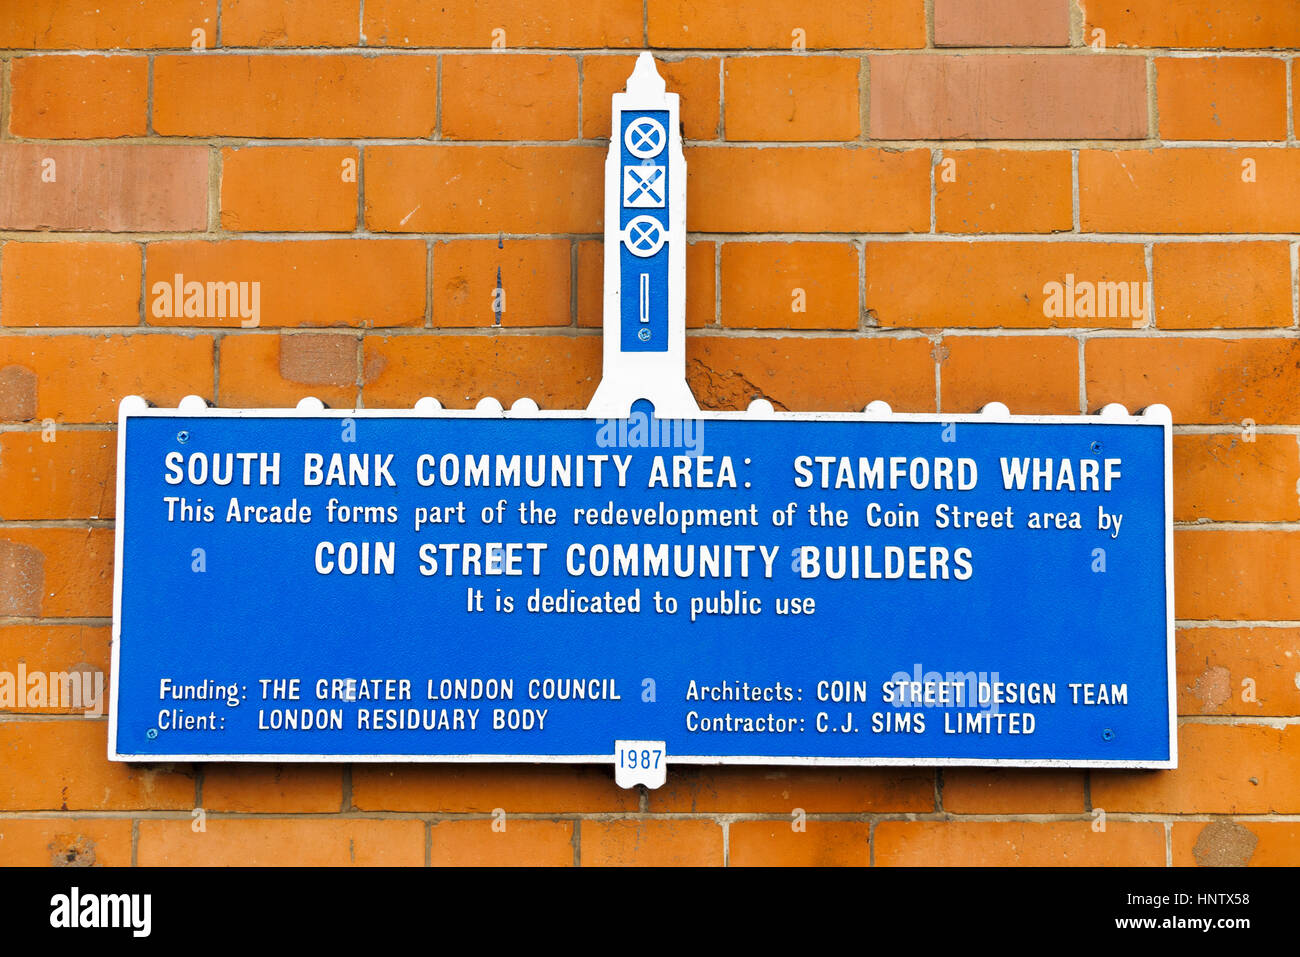 Banco del Sur zona comunitaria, Stamford Wharf, parte de la zona de la calle de moneda, proyecto de regeneración urbana de la calle de moneda saneado por constructores de la comunidad Foto de stock